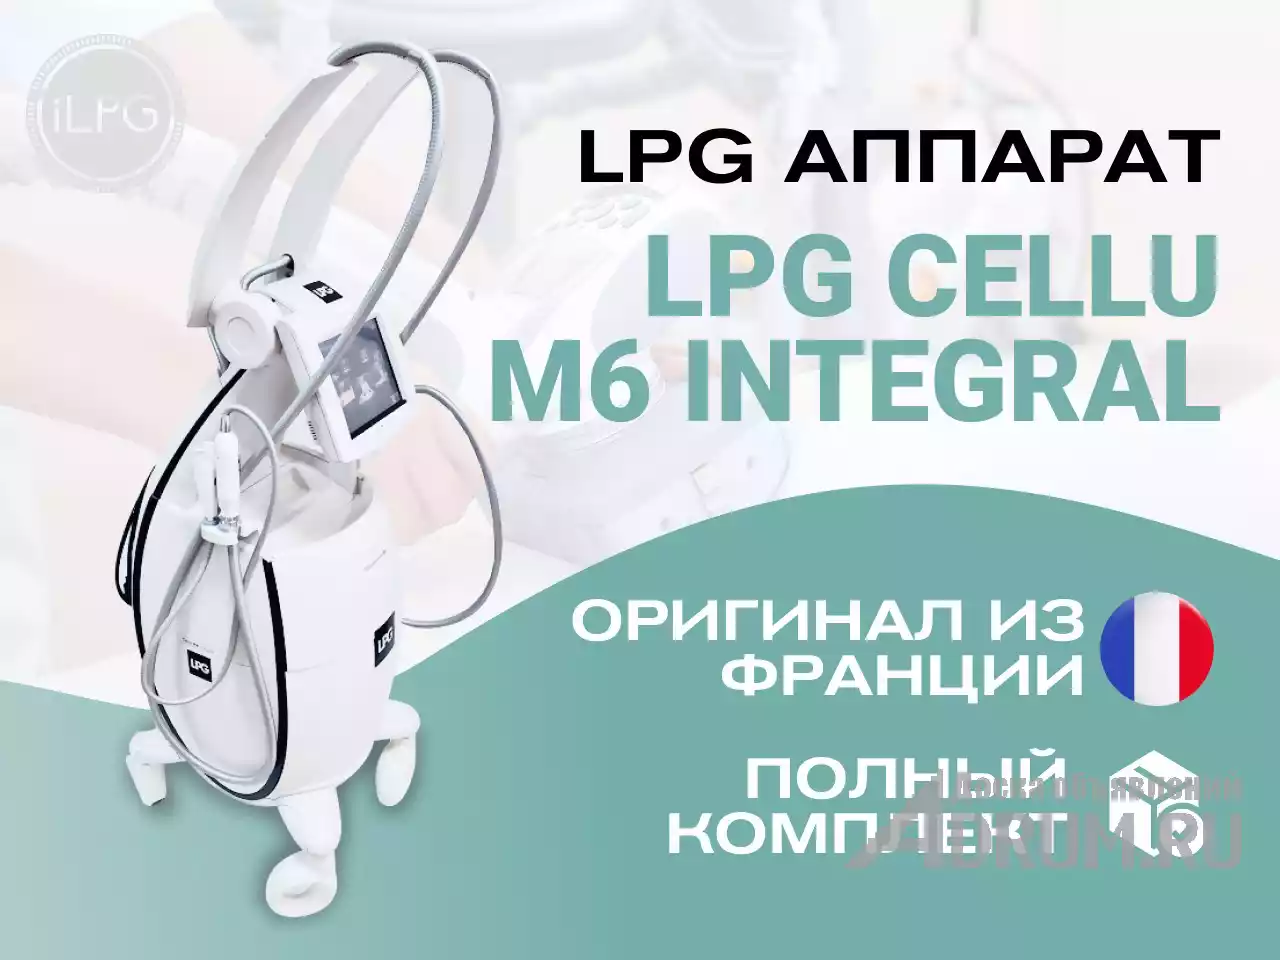 Оригинальный LPG аппарат для массажа Cellu M6 Integral в Москвe